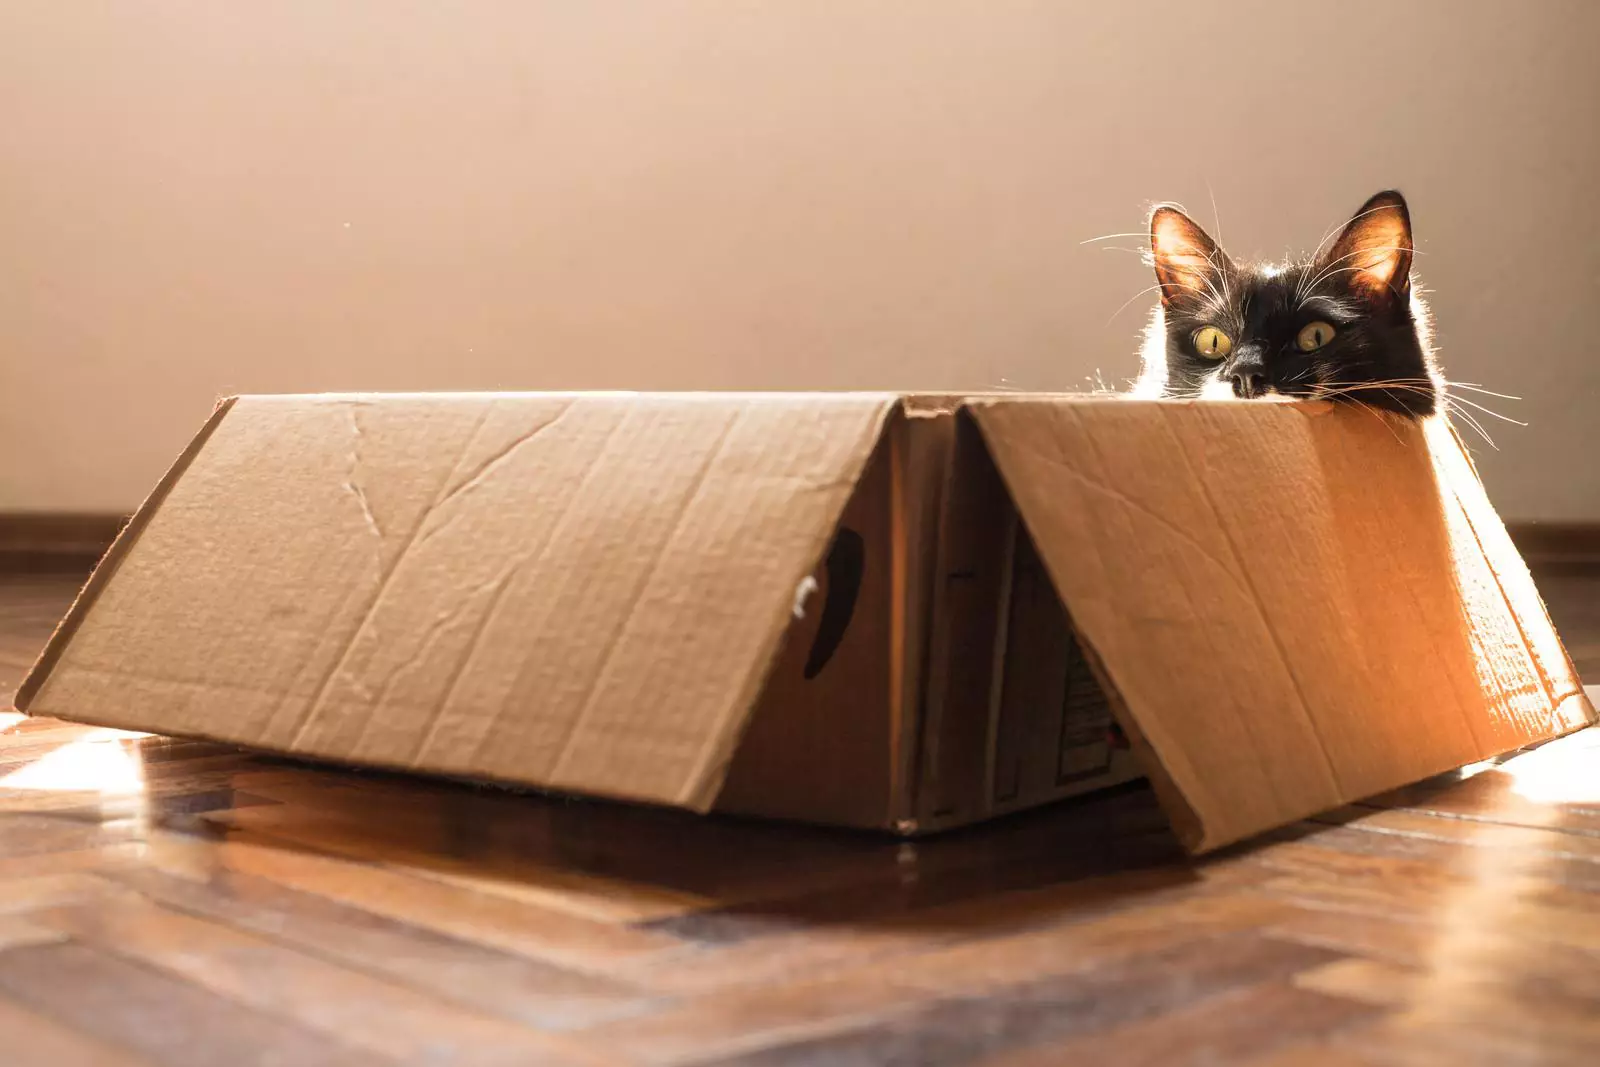 Обустройте для активного кота игровую зону с коробками, пакетиками, мячиками, головоломками, удочками и так далее. Питомец будет от нее в восторге.